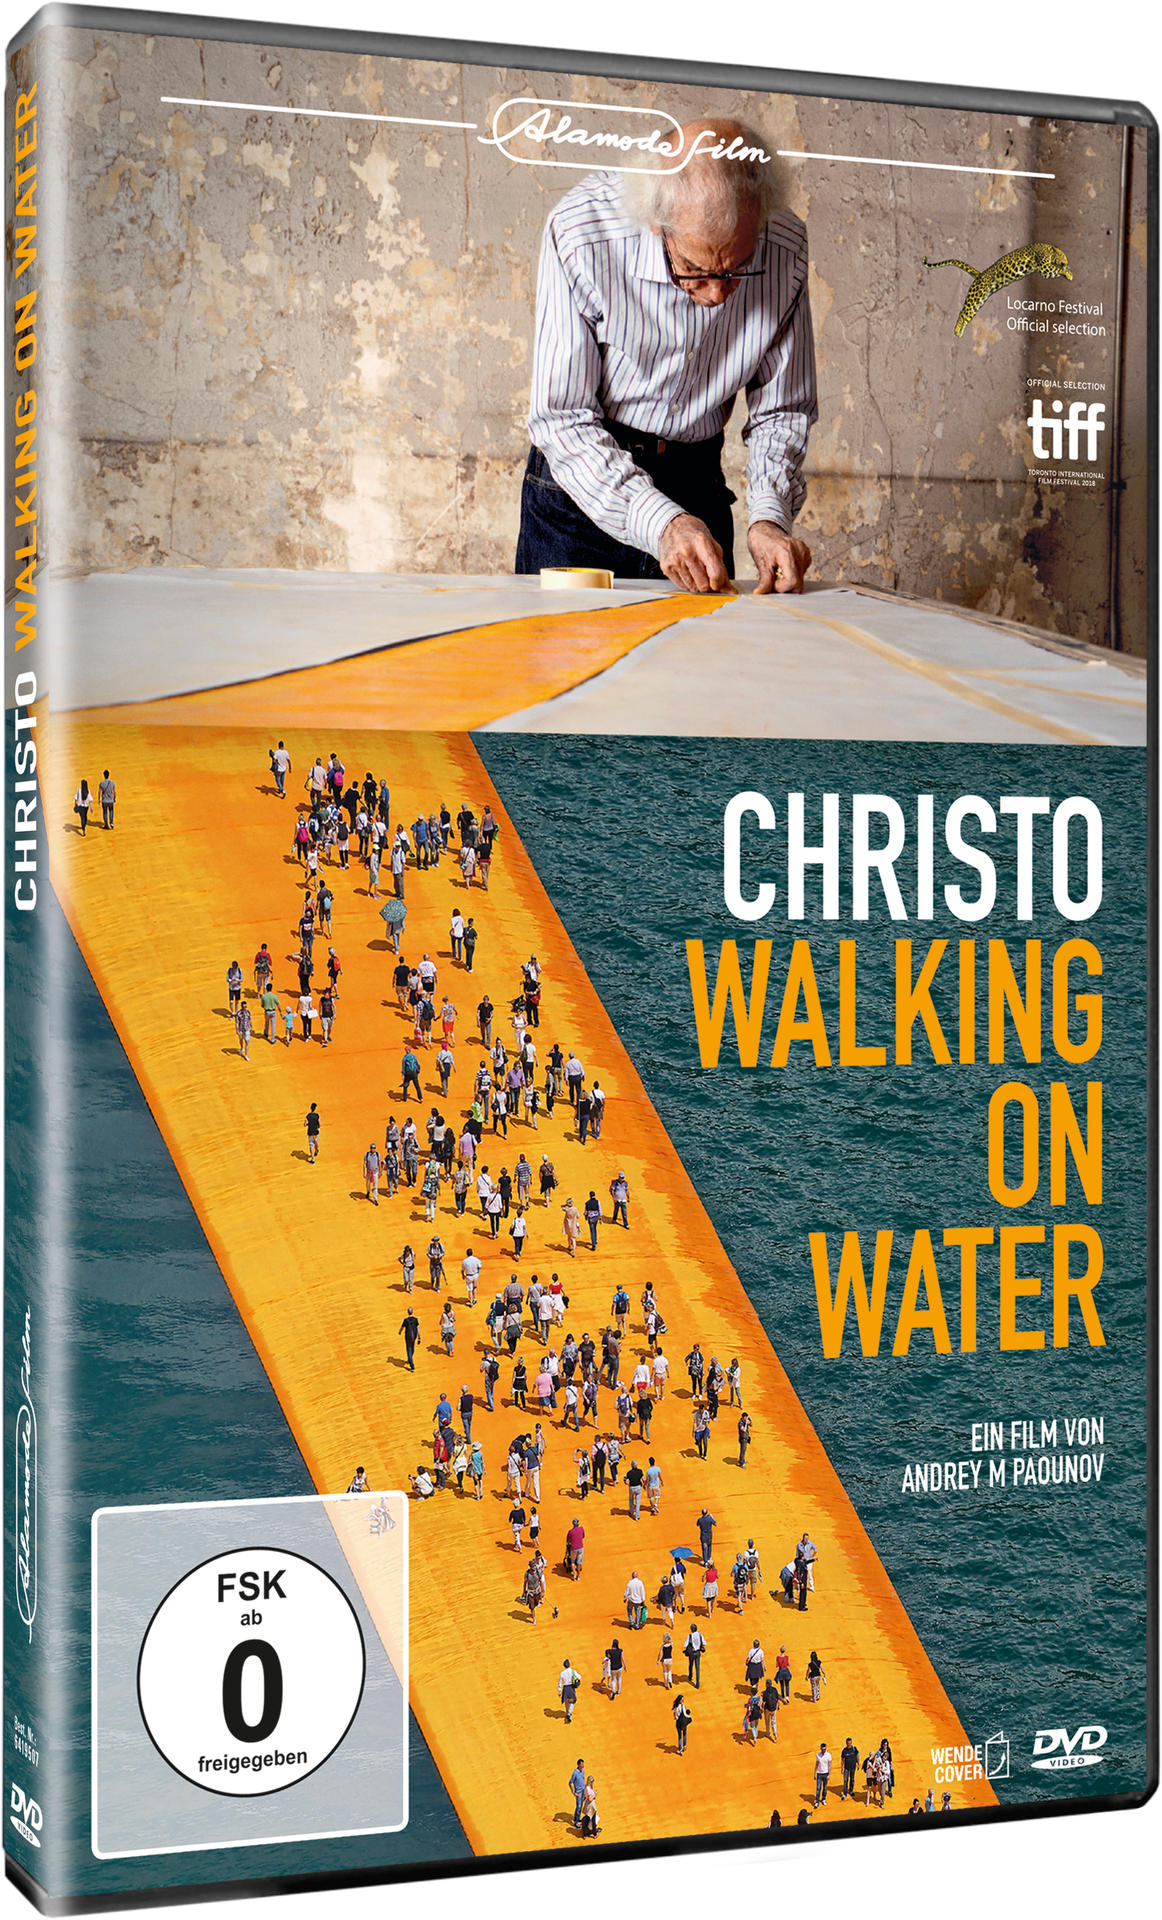 Water Christo-Walking DVD on